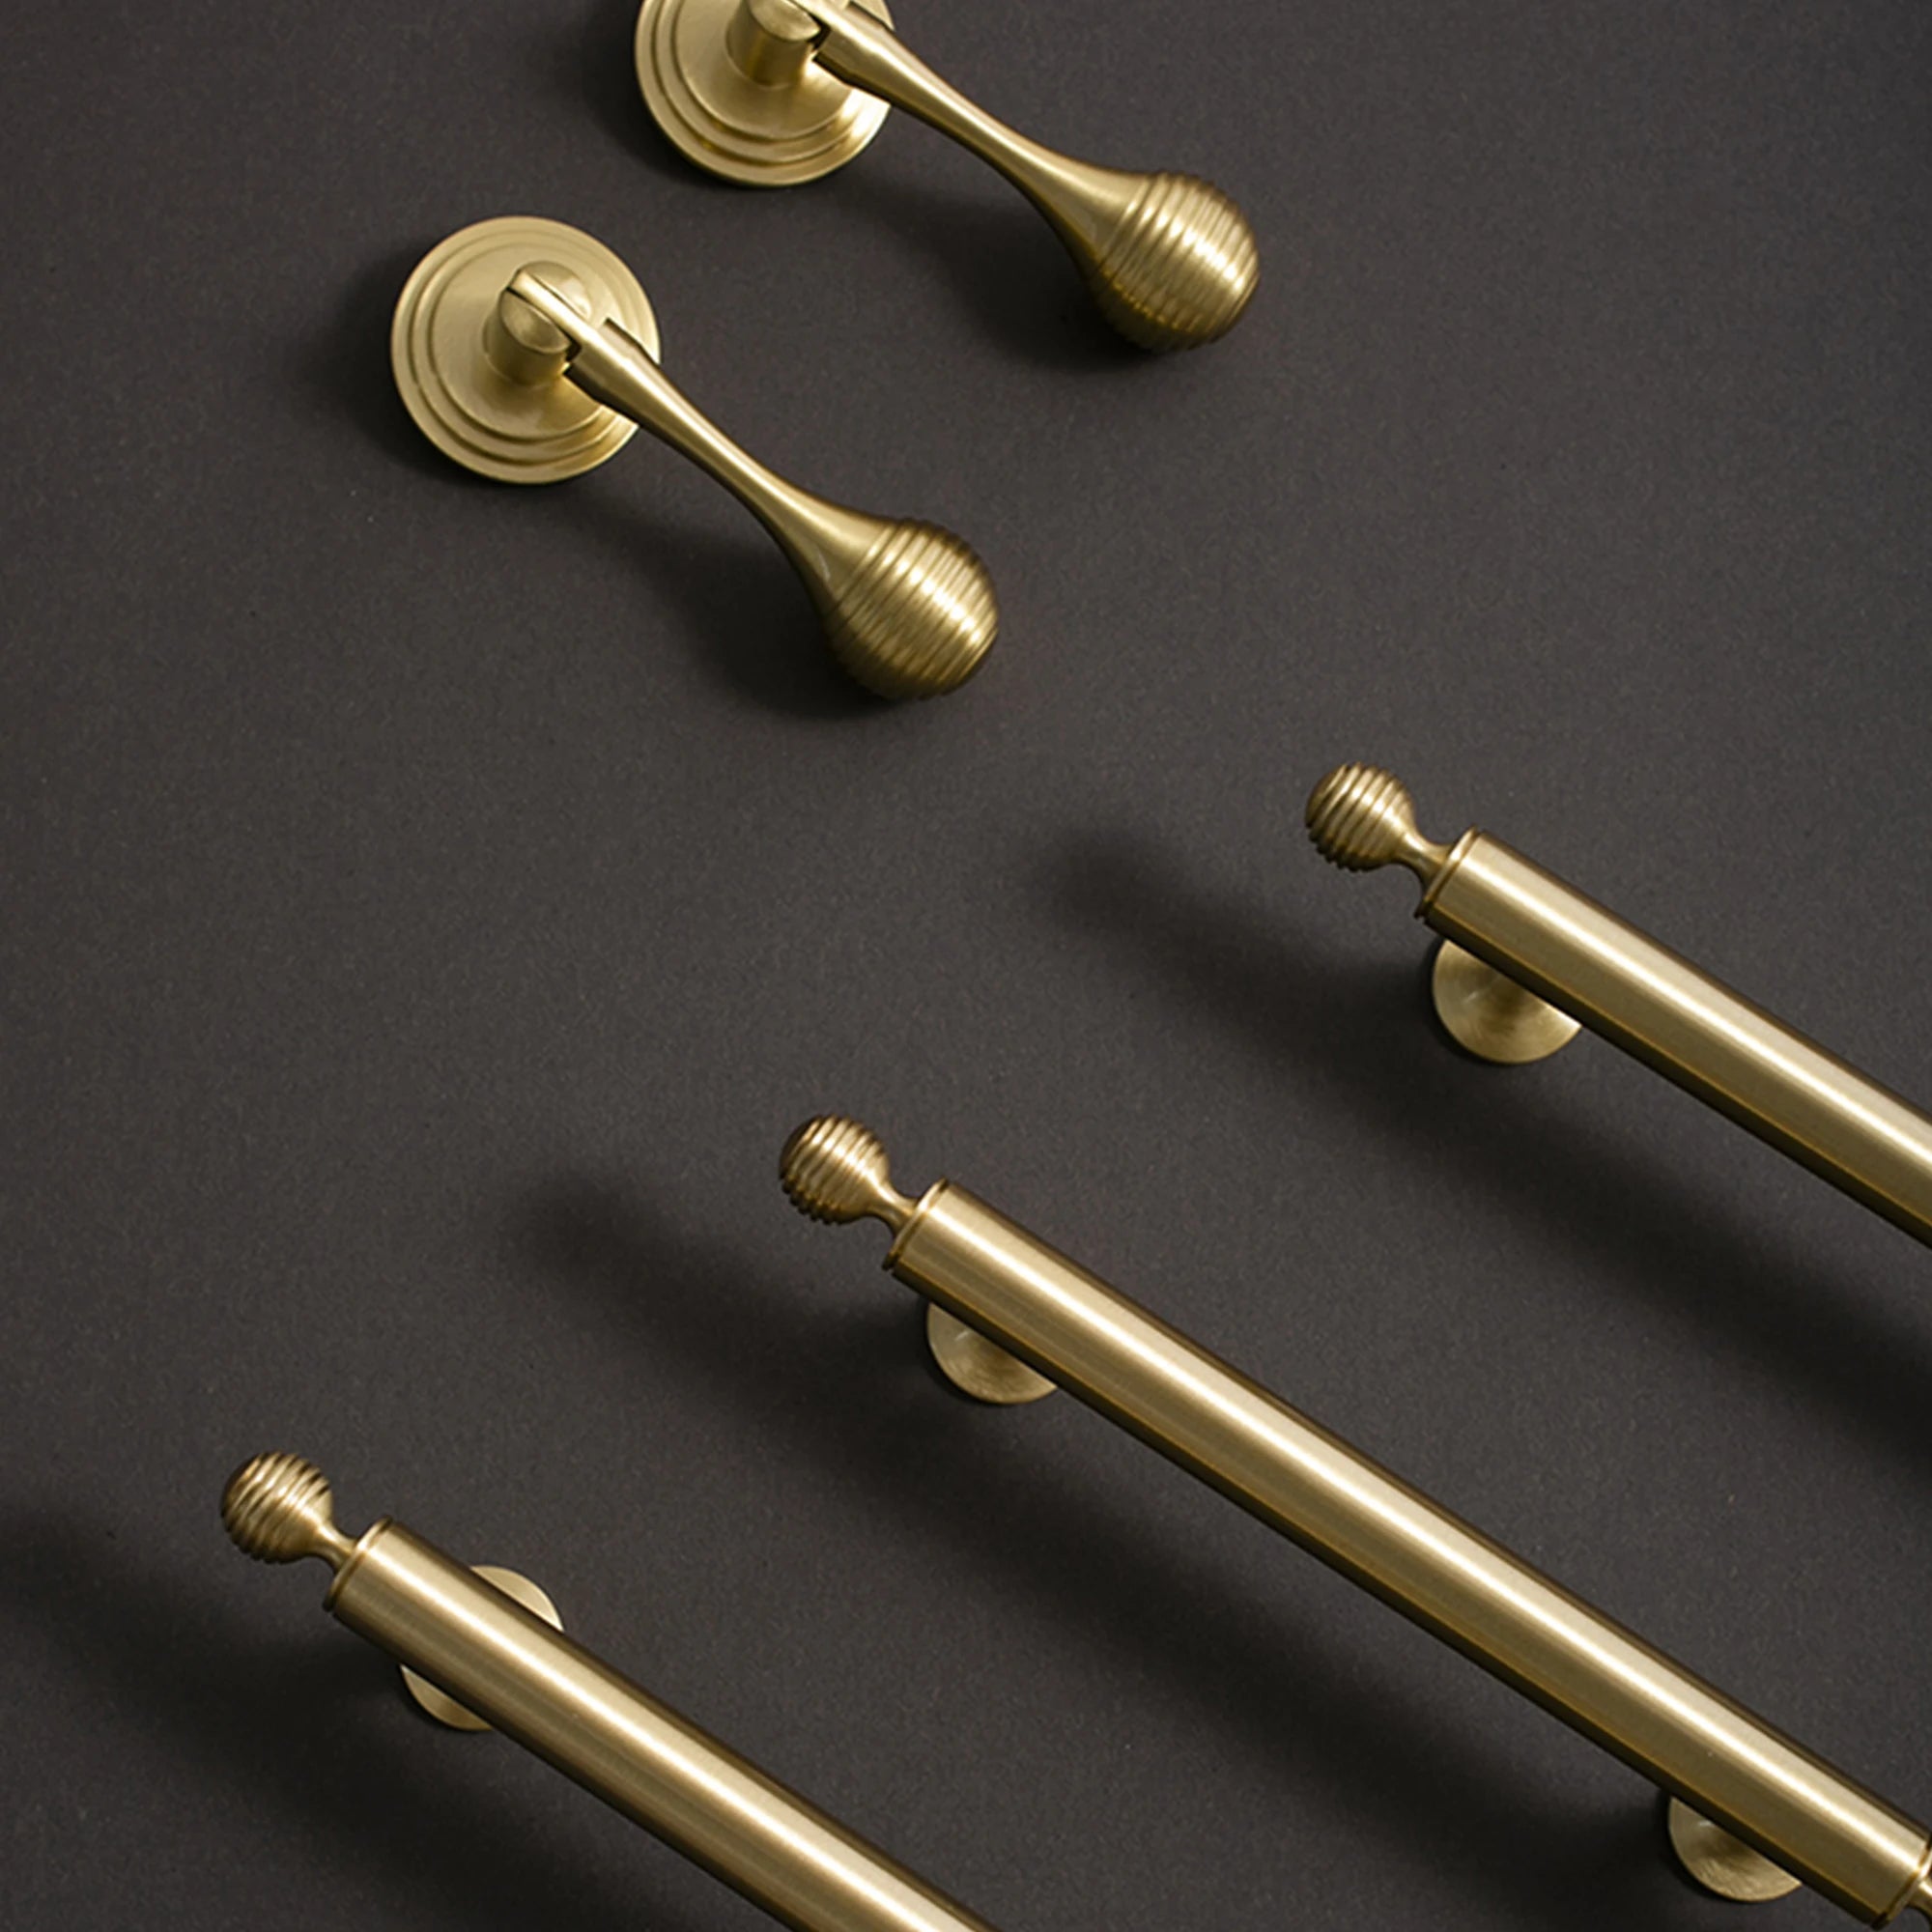 Solid Brass Wardrobe Drop Pulls Round Door Knobs Light Luxury Furniture Handles Cabinet Handle Hardware Kitchen Accessories